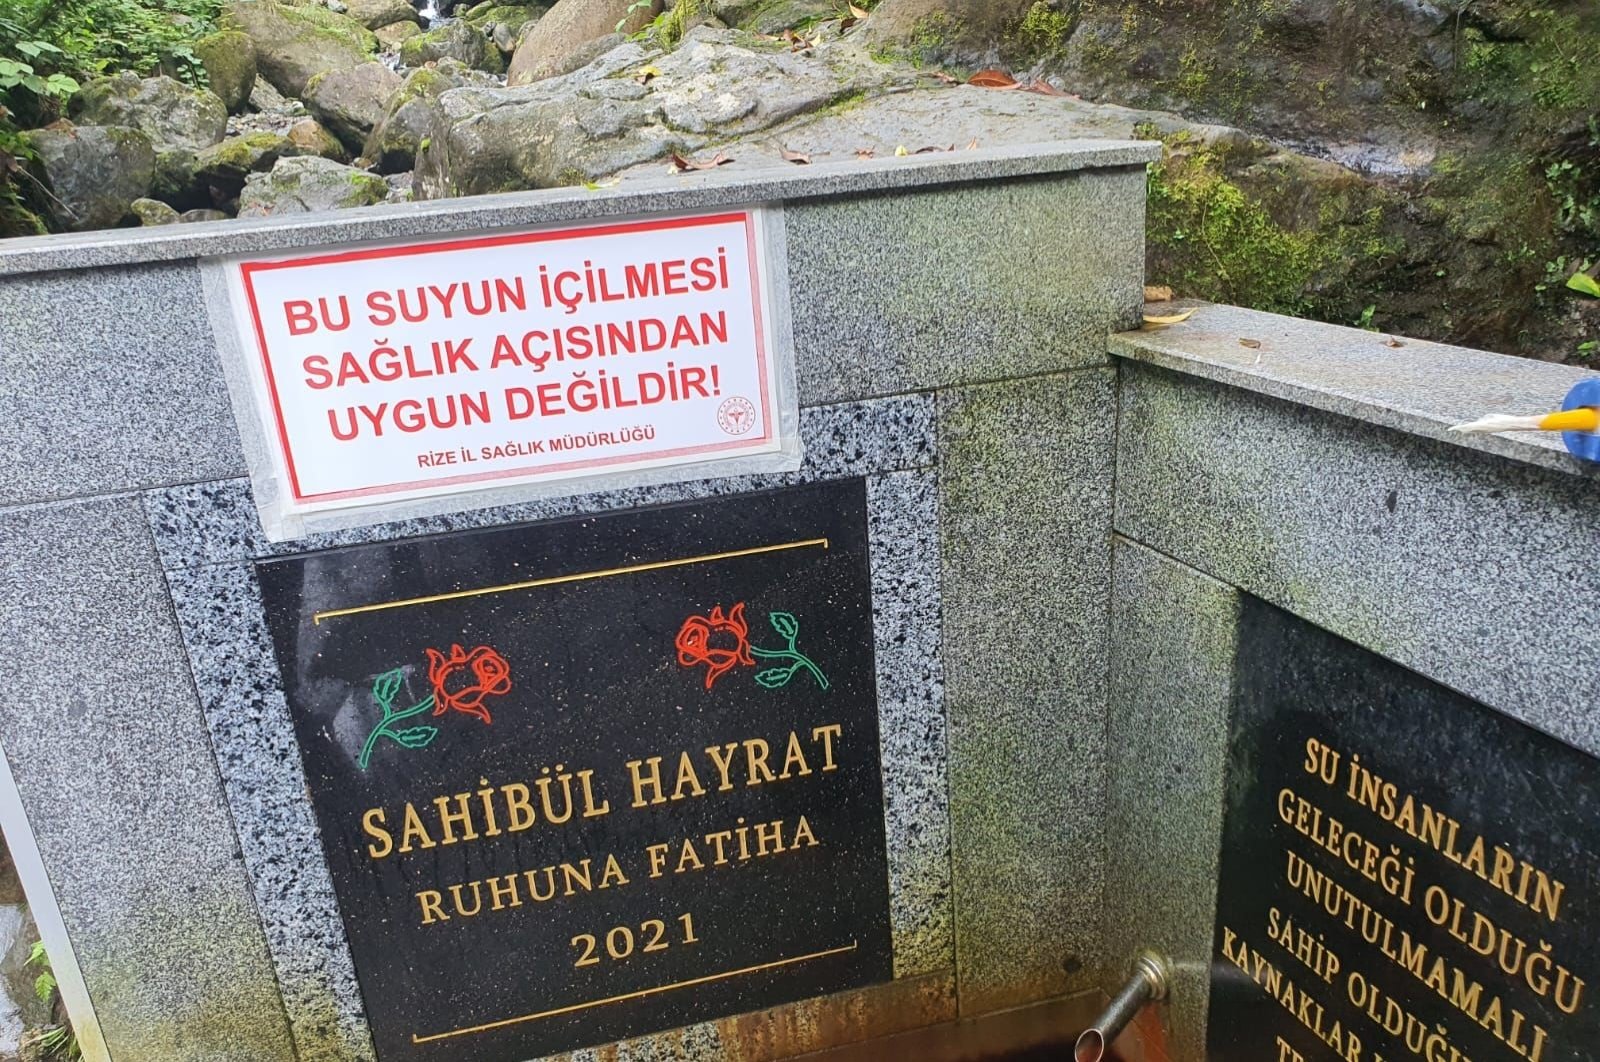 ‘Air penyembuh’ di Türkiye utara penuh dengan arsenik, temuan penelitian